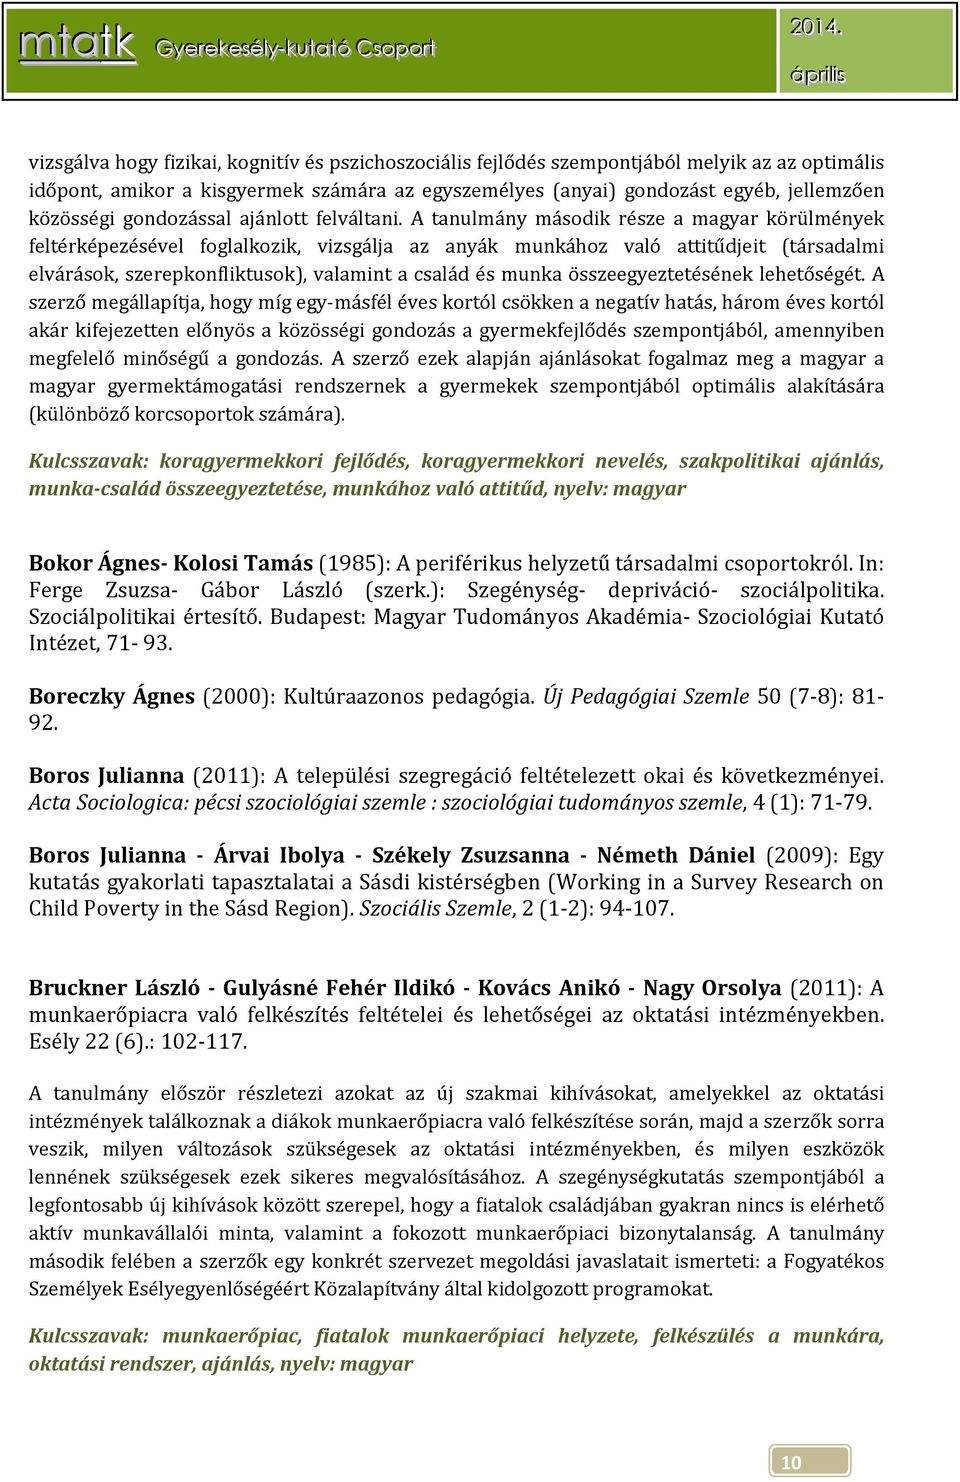 A tanulmány második része a magyar körülmények feltérképezésével foglalkozik, vizsgálja az anyák munkához való attitűdjeit (társadalmi elvárások, szerepkonfliktusok), valamint a család és munka